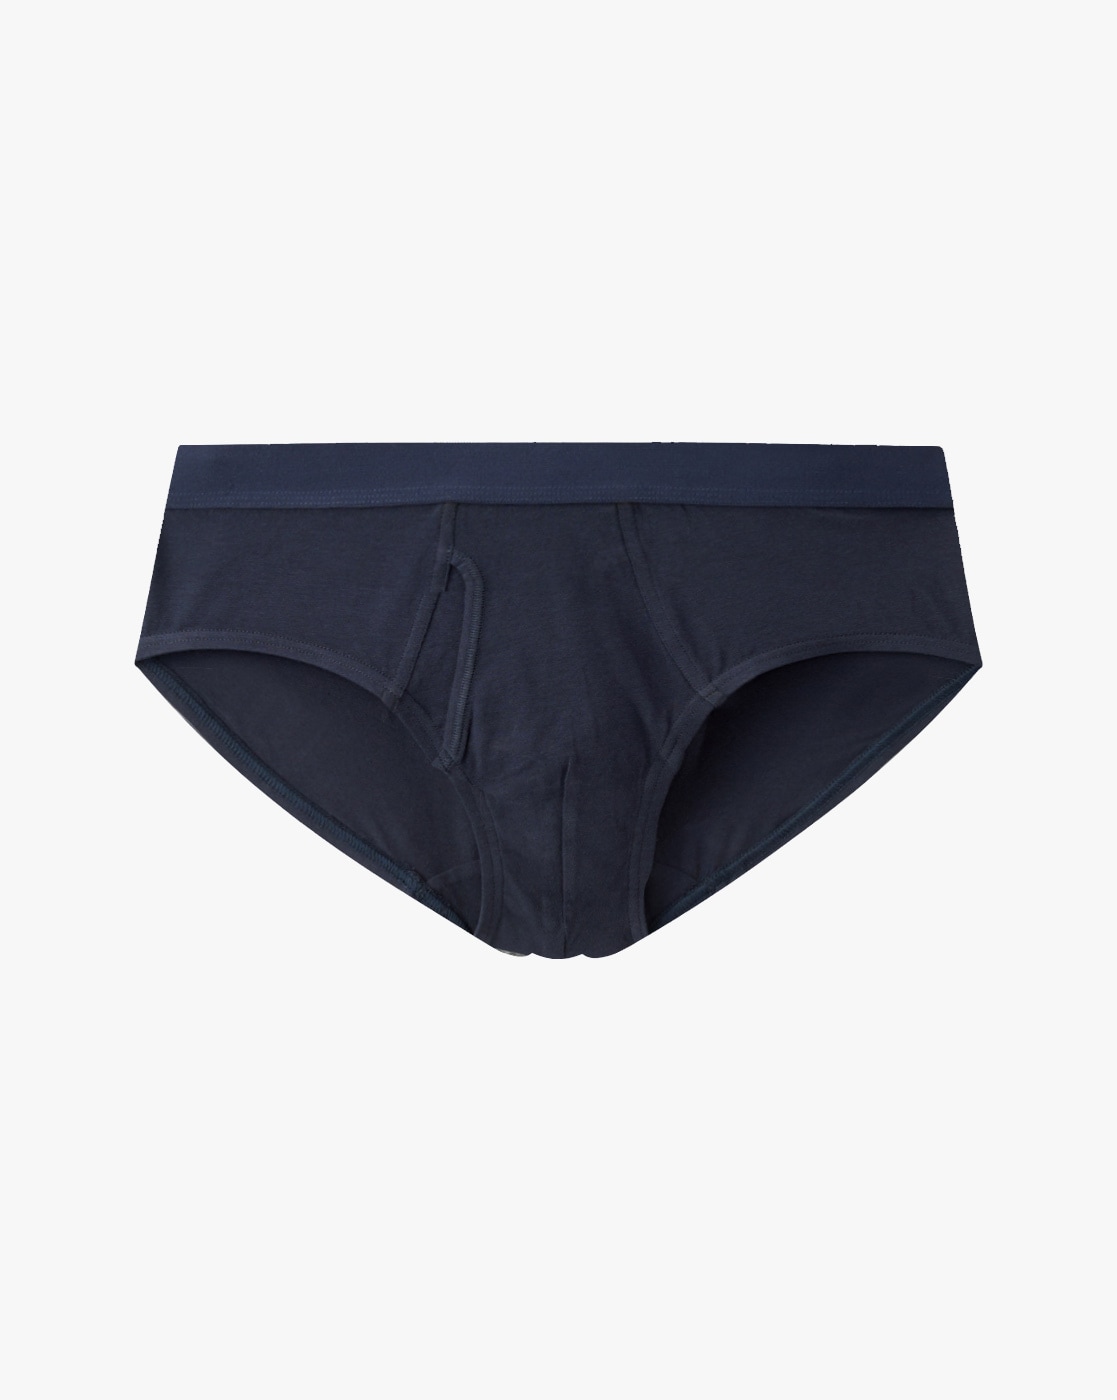 BNIP> MUJI Men's Dark Navy Front Open Briefs Size M Underwear, Men's  Fashion, Bottoms, New Underwear on Carousell